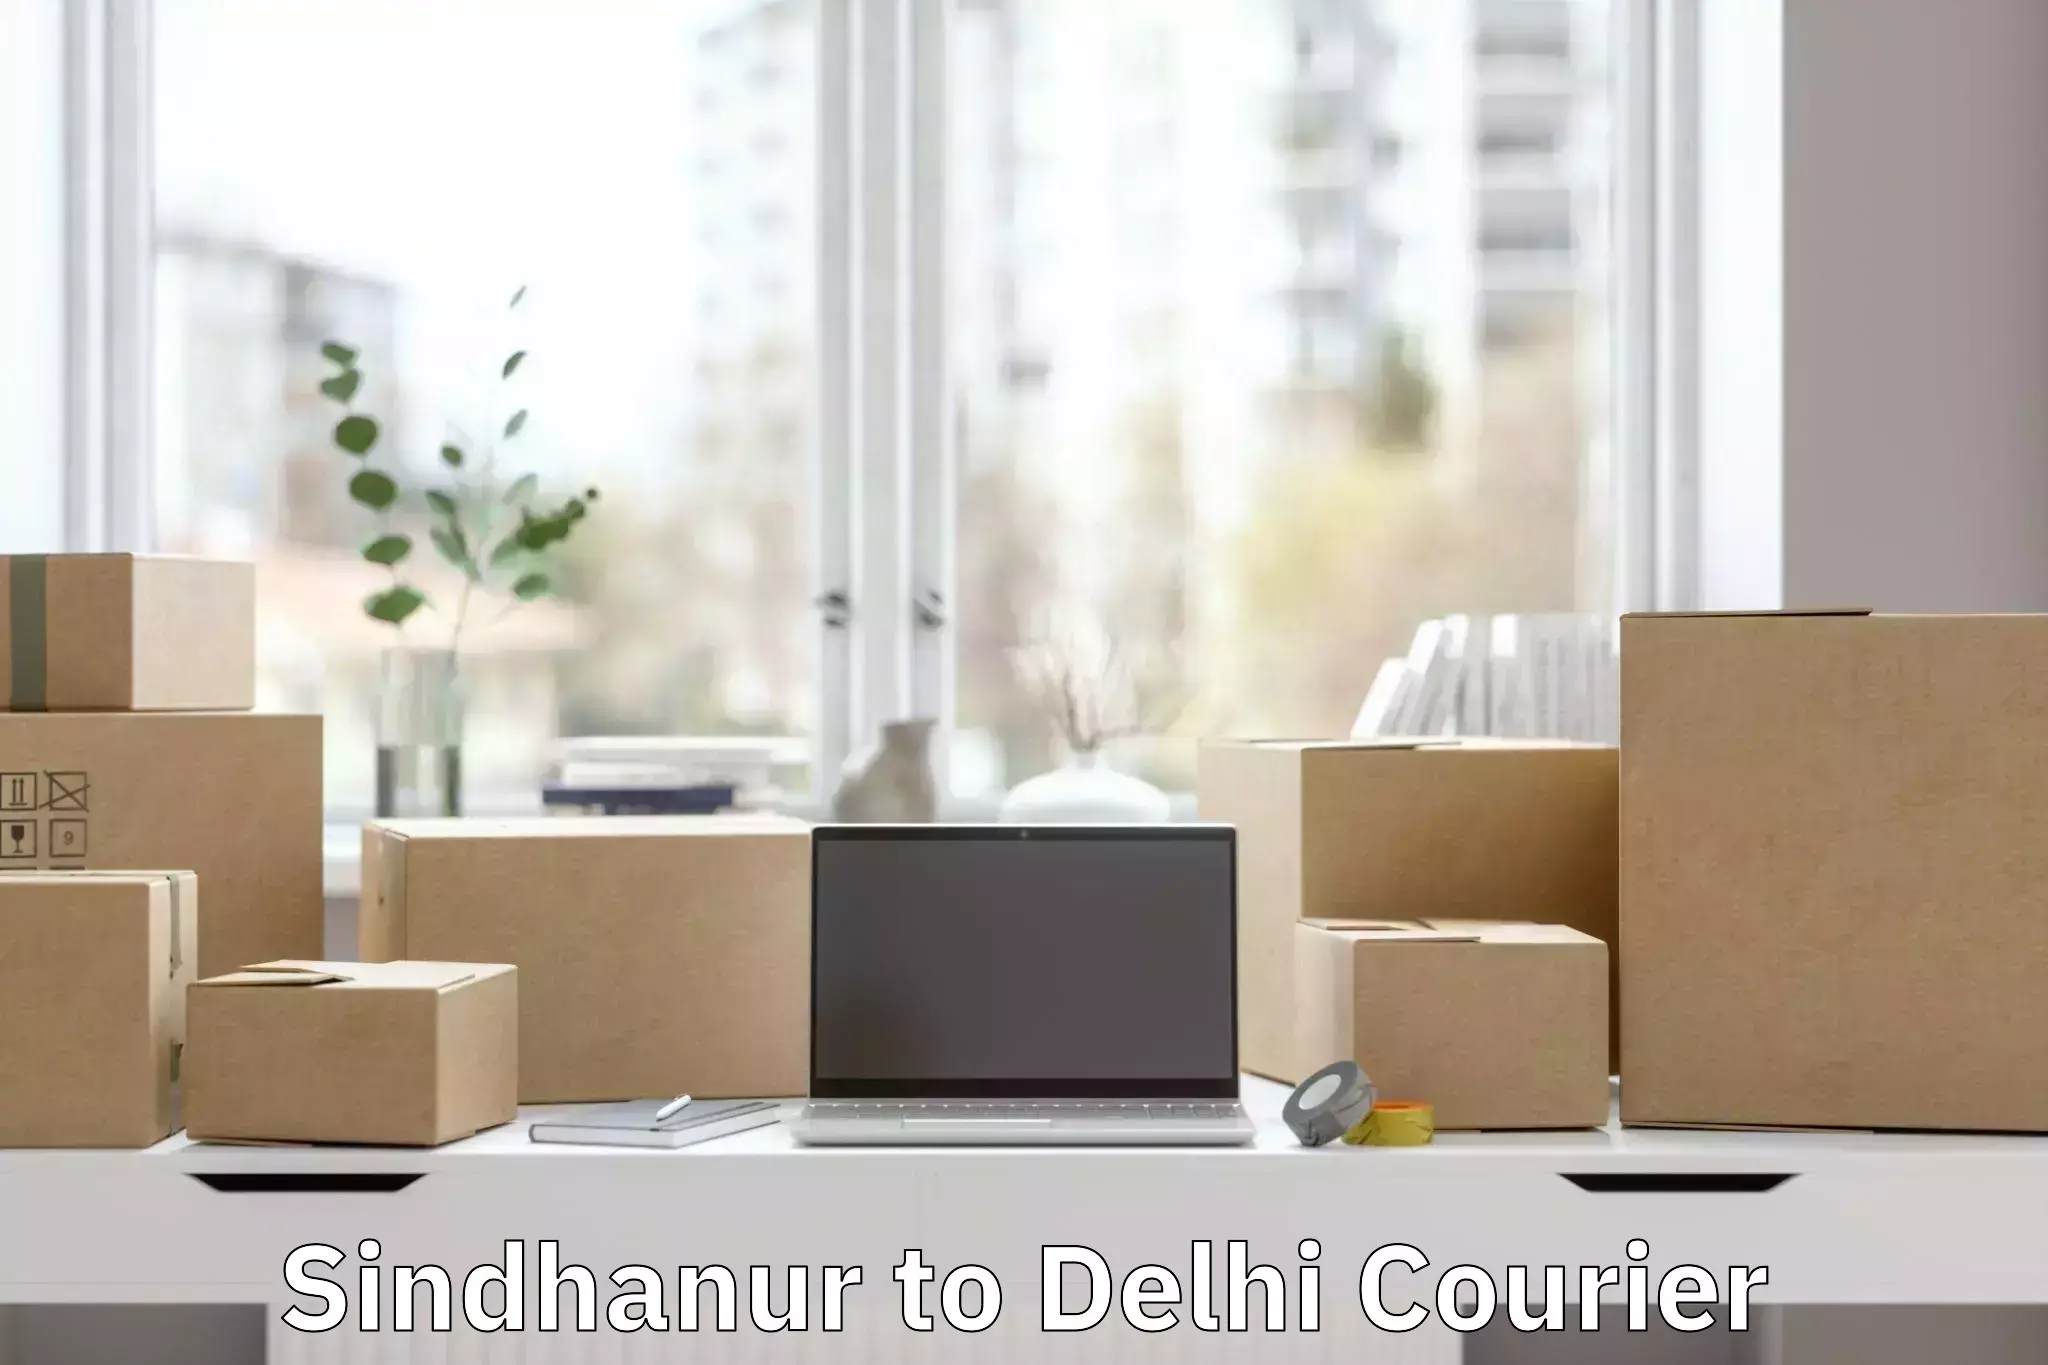 Express luggage delivery Sindhanur to Jamia Millia Islamia New Delhi